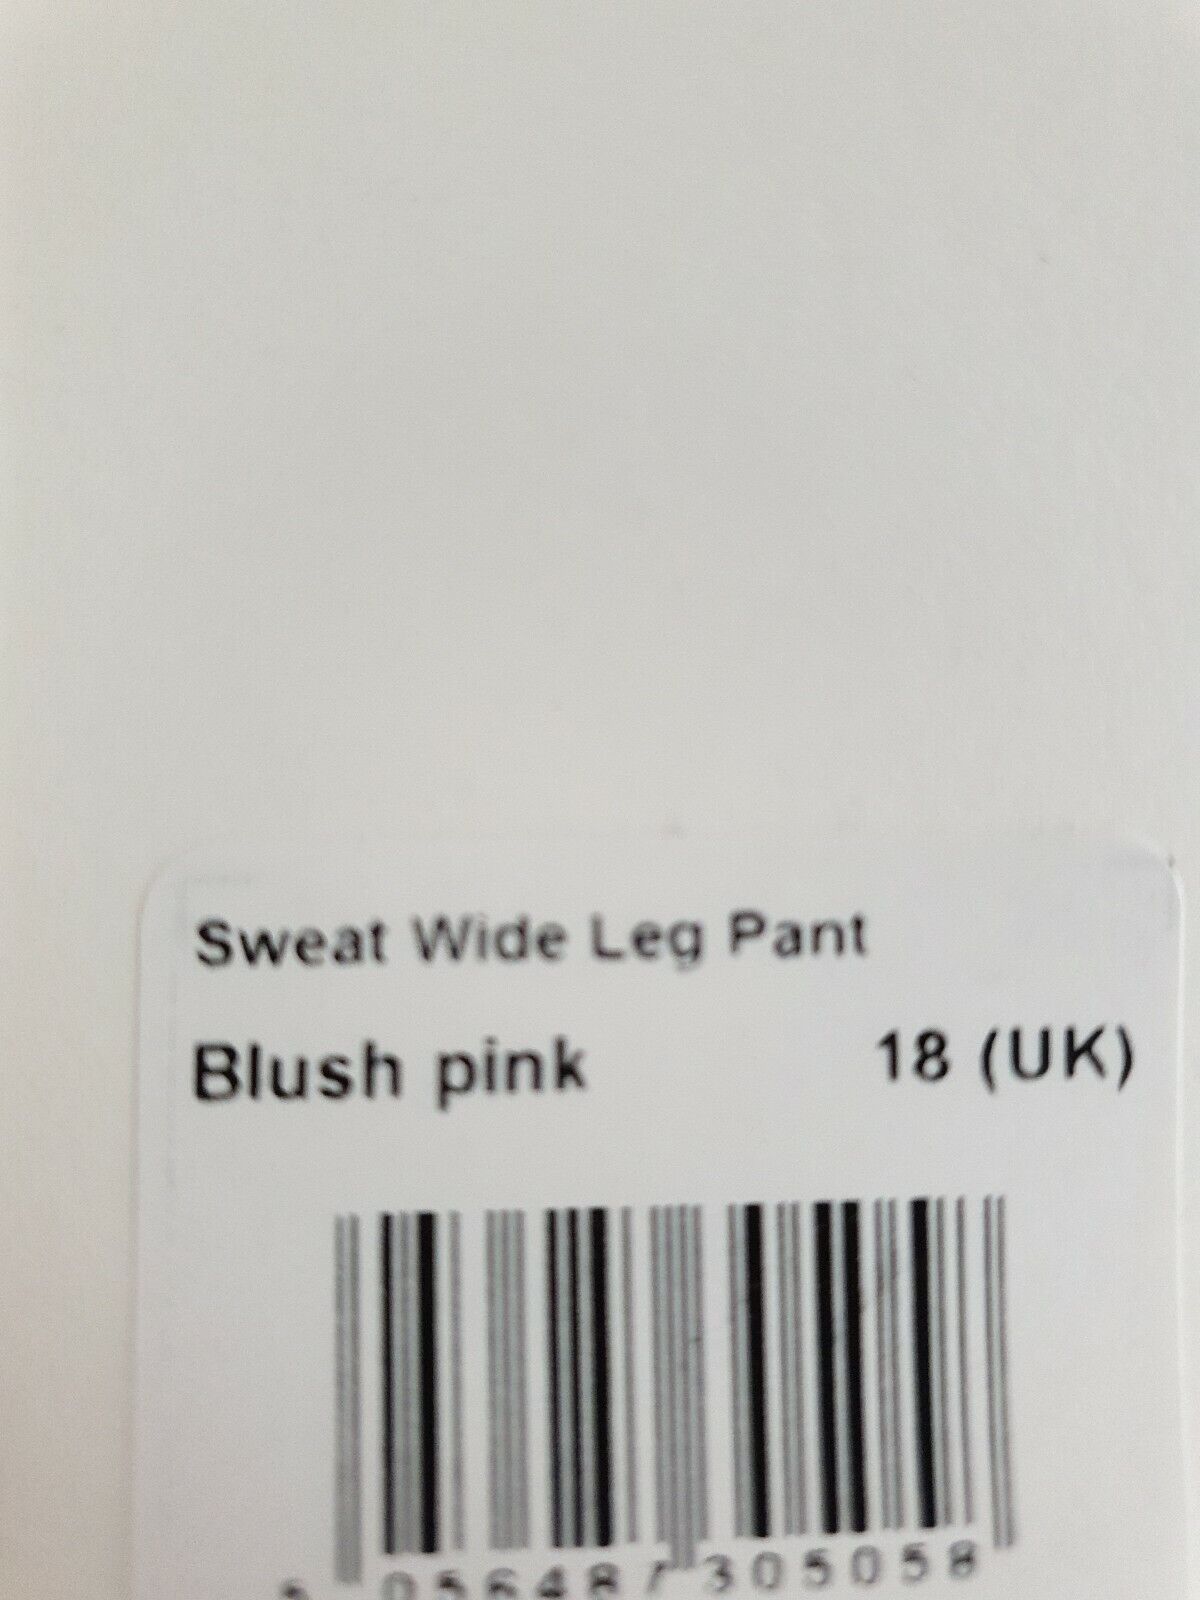 Albaray Sweat Wide Leg Pant Blush Pink Uk18 Ref E1